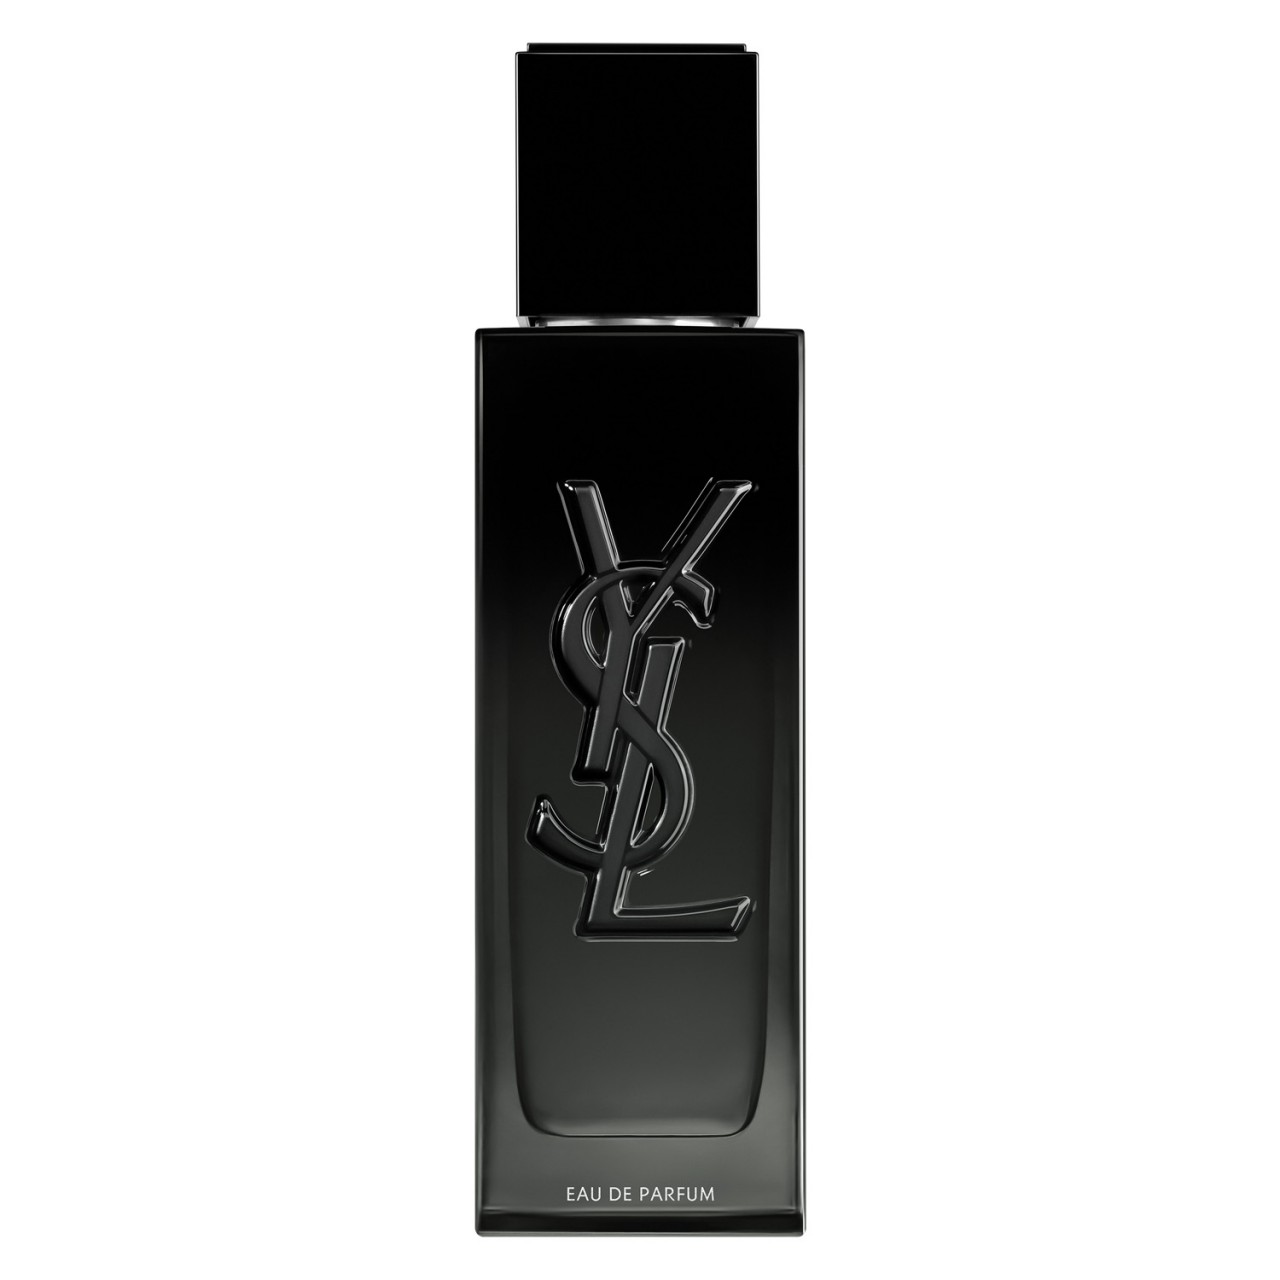 MYSLF - Eau de Parfum von Yves Saint Laurent